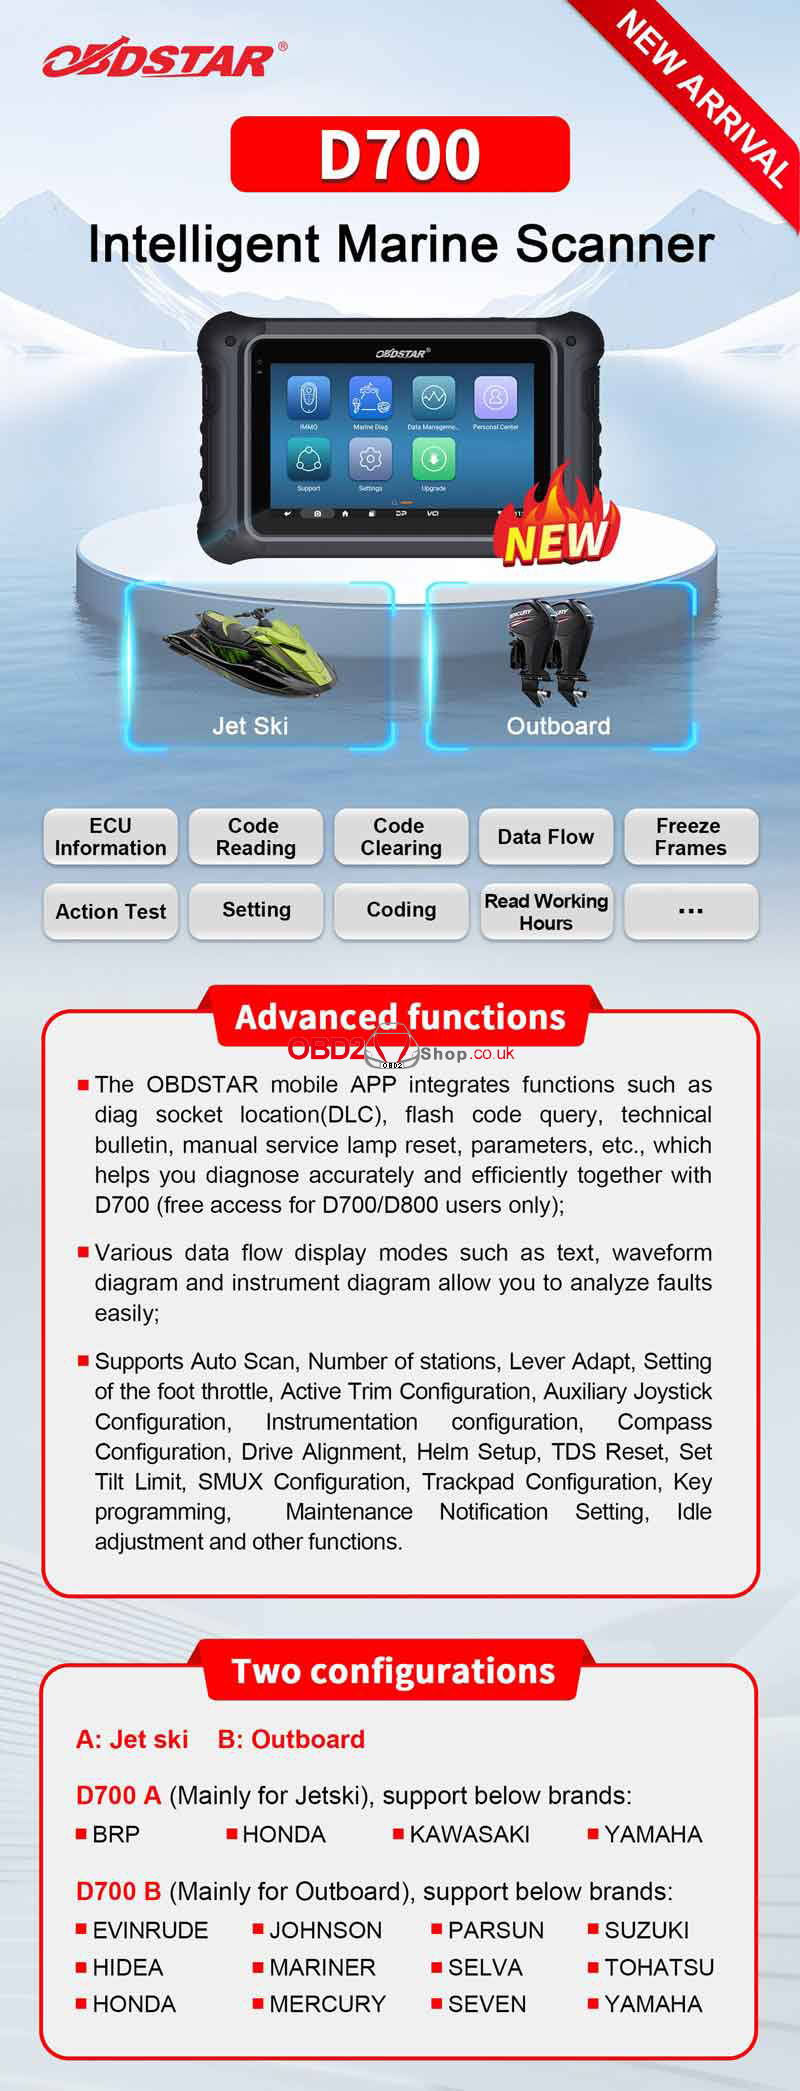 obdstar-d700-jet-ski-outboard-intelligent-marine-scanner-(2)